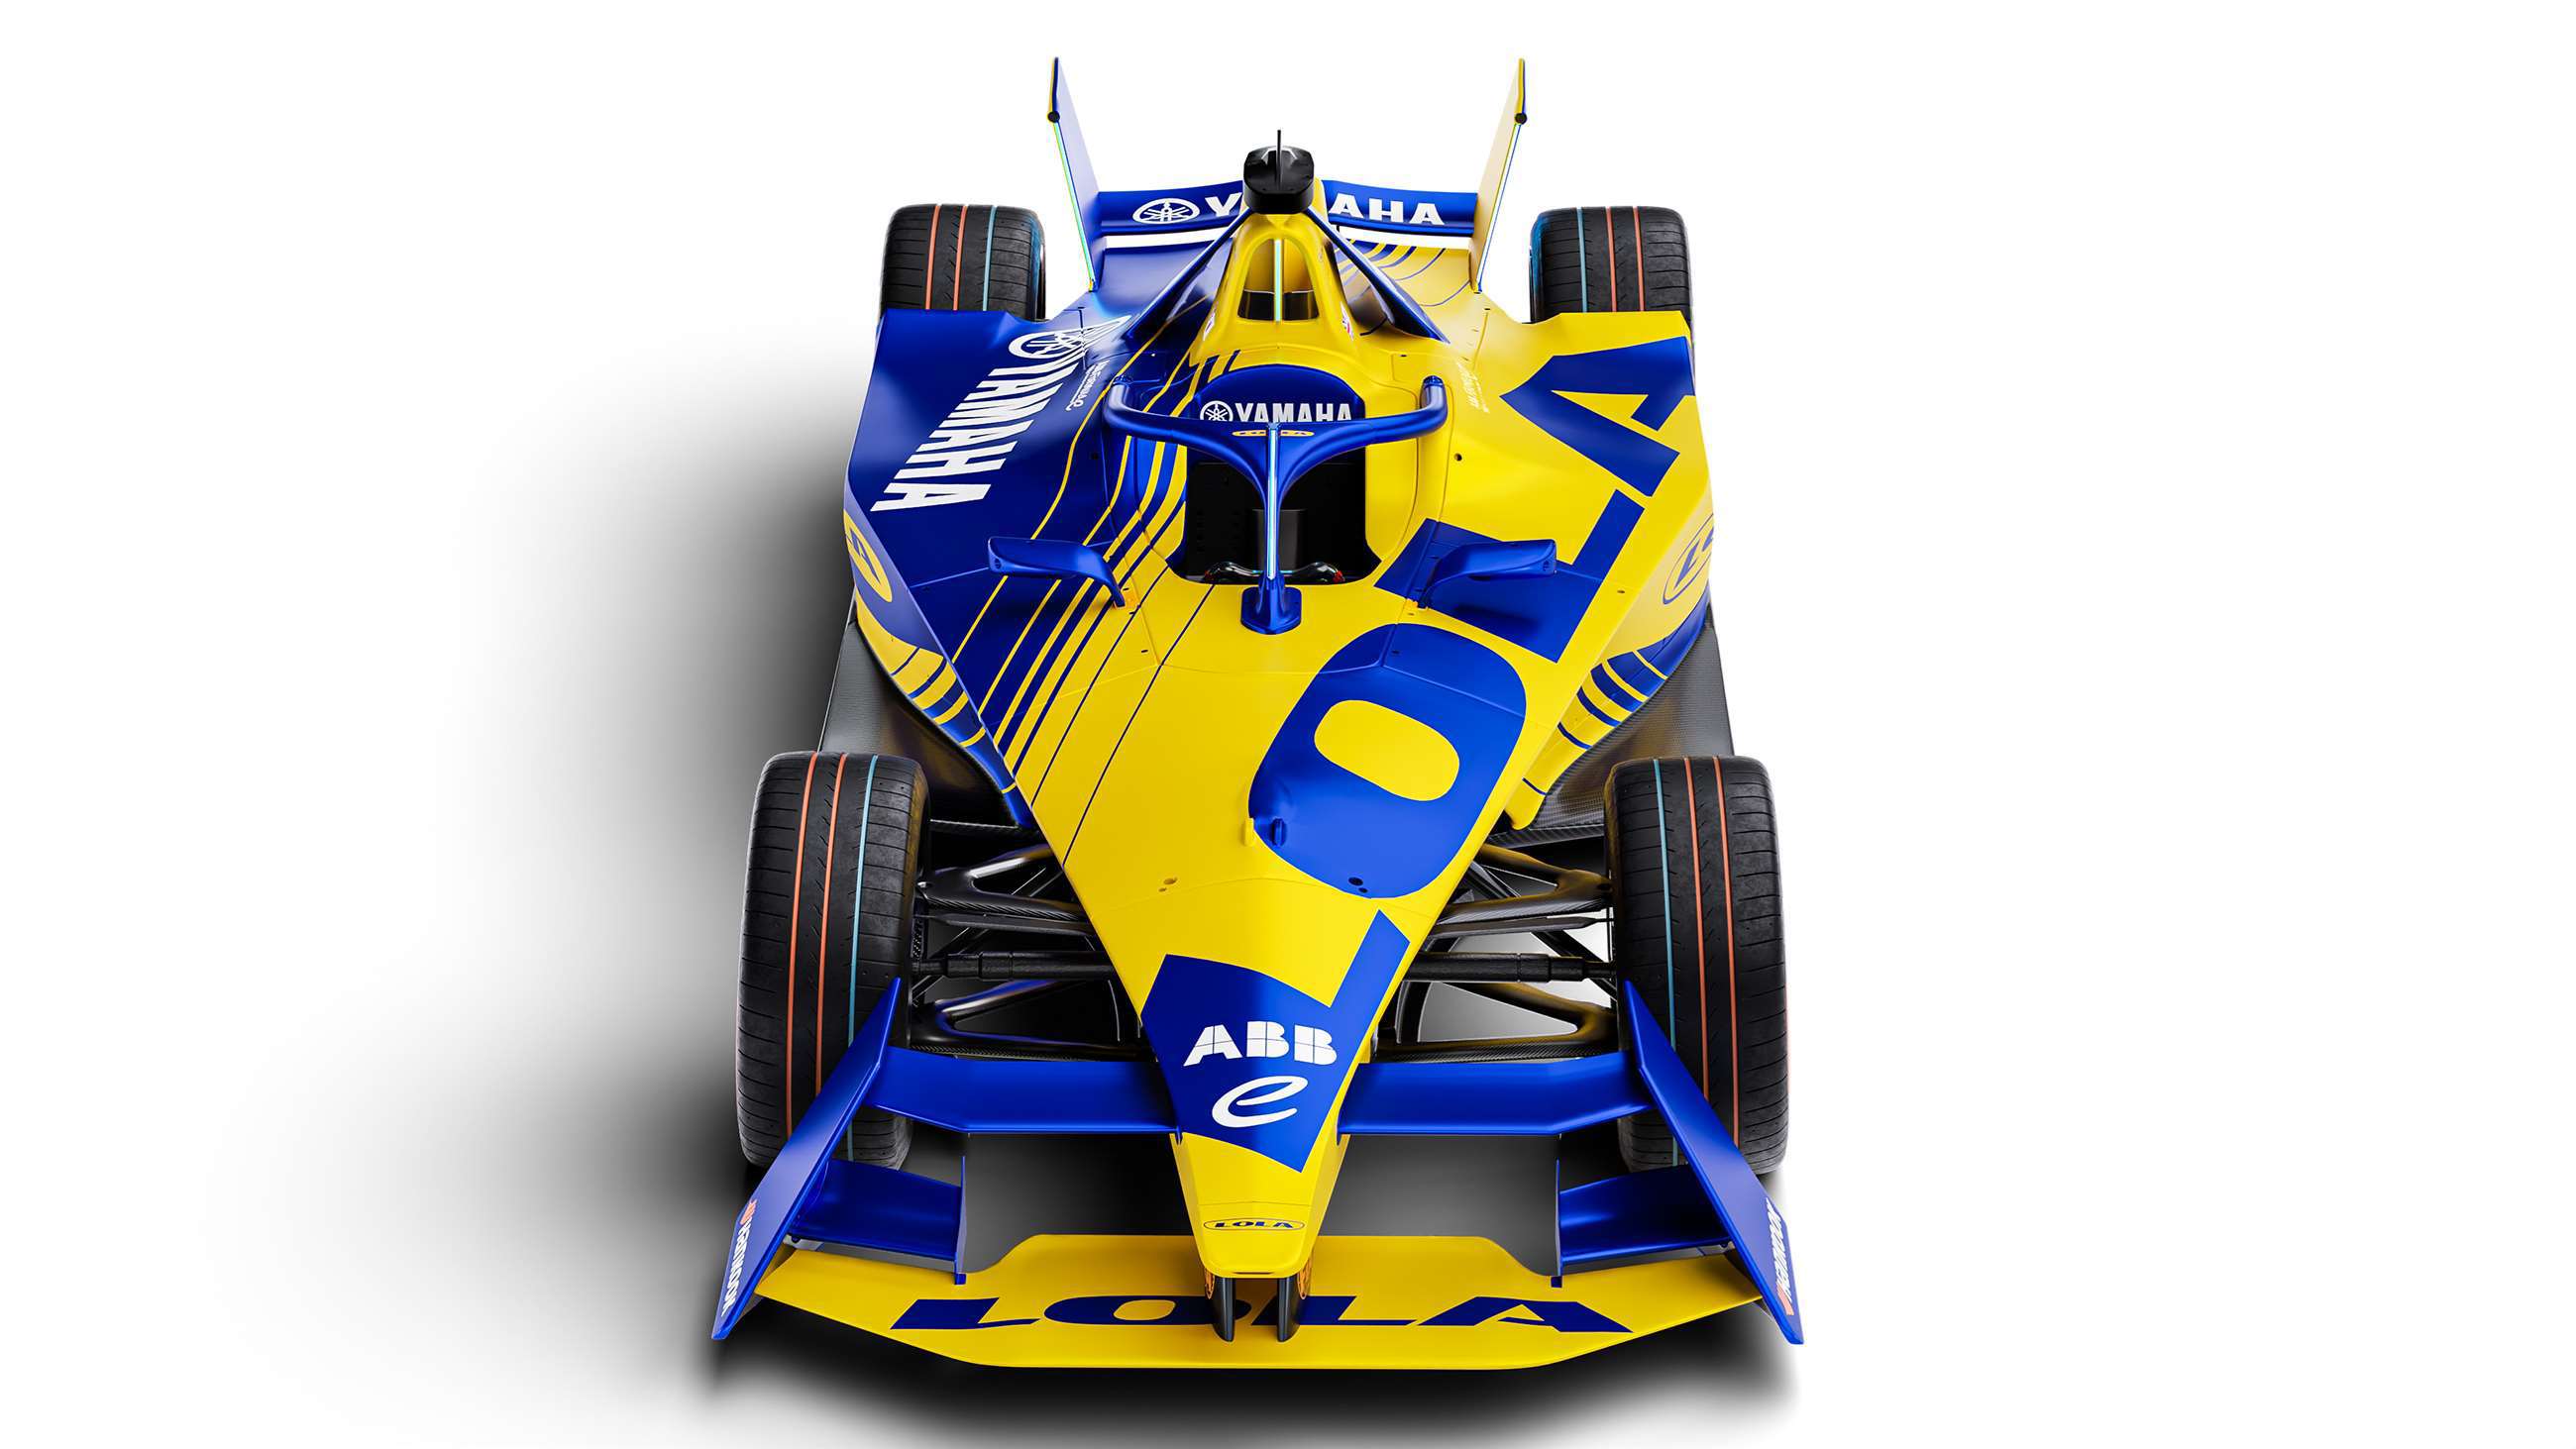 lola-to-make-huge-return-to-motorsport-in-formula-e-02.jpg